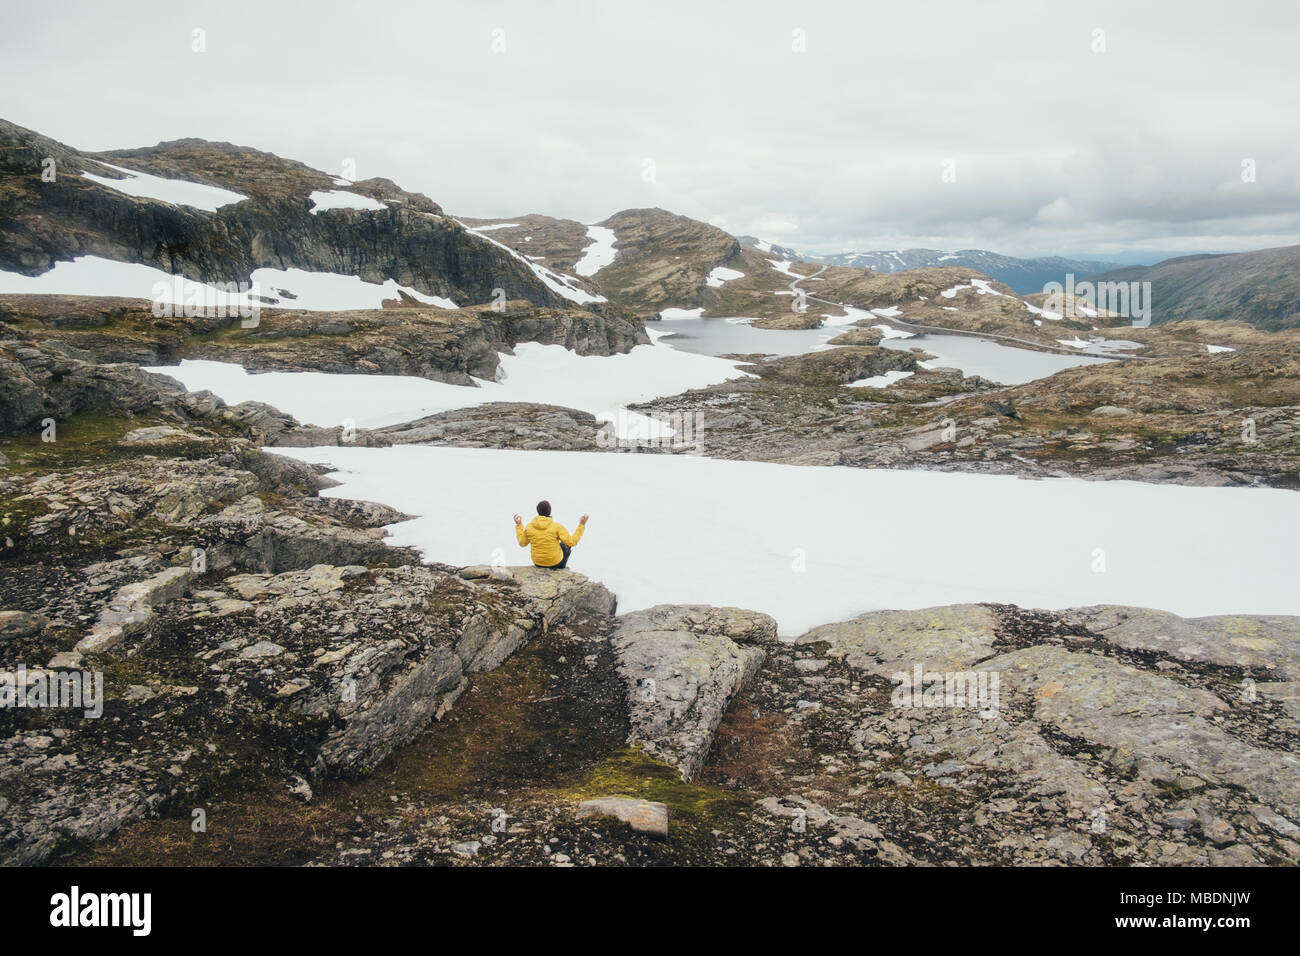 Norvégien typique paysage avec montagnes enneigées Banque D'Images